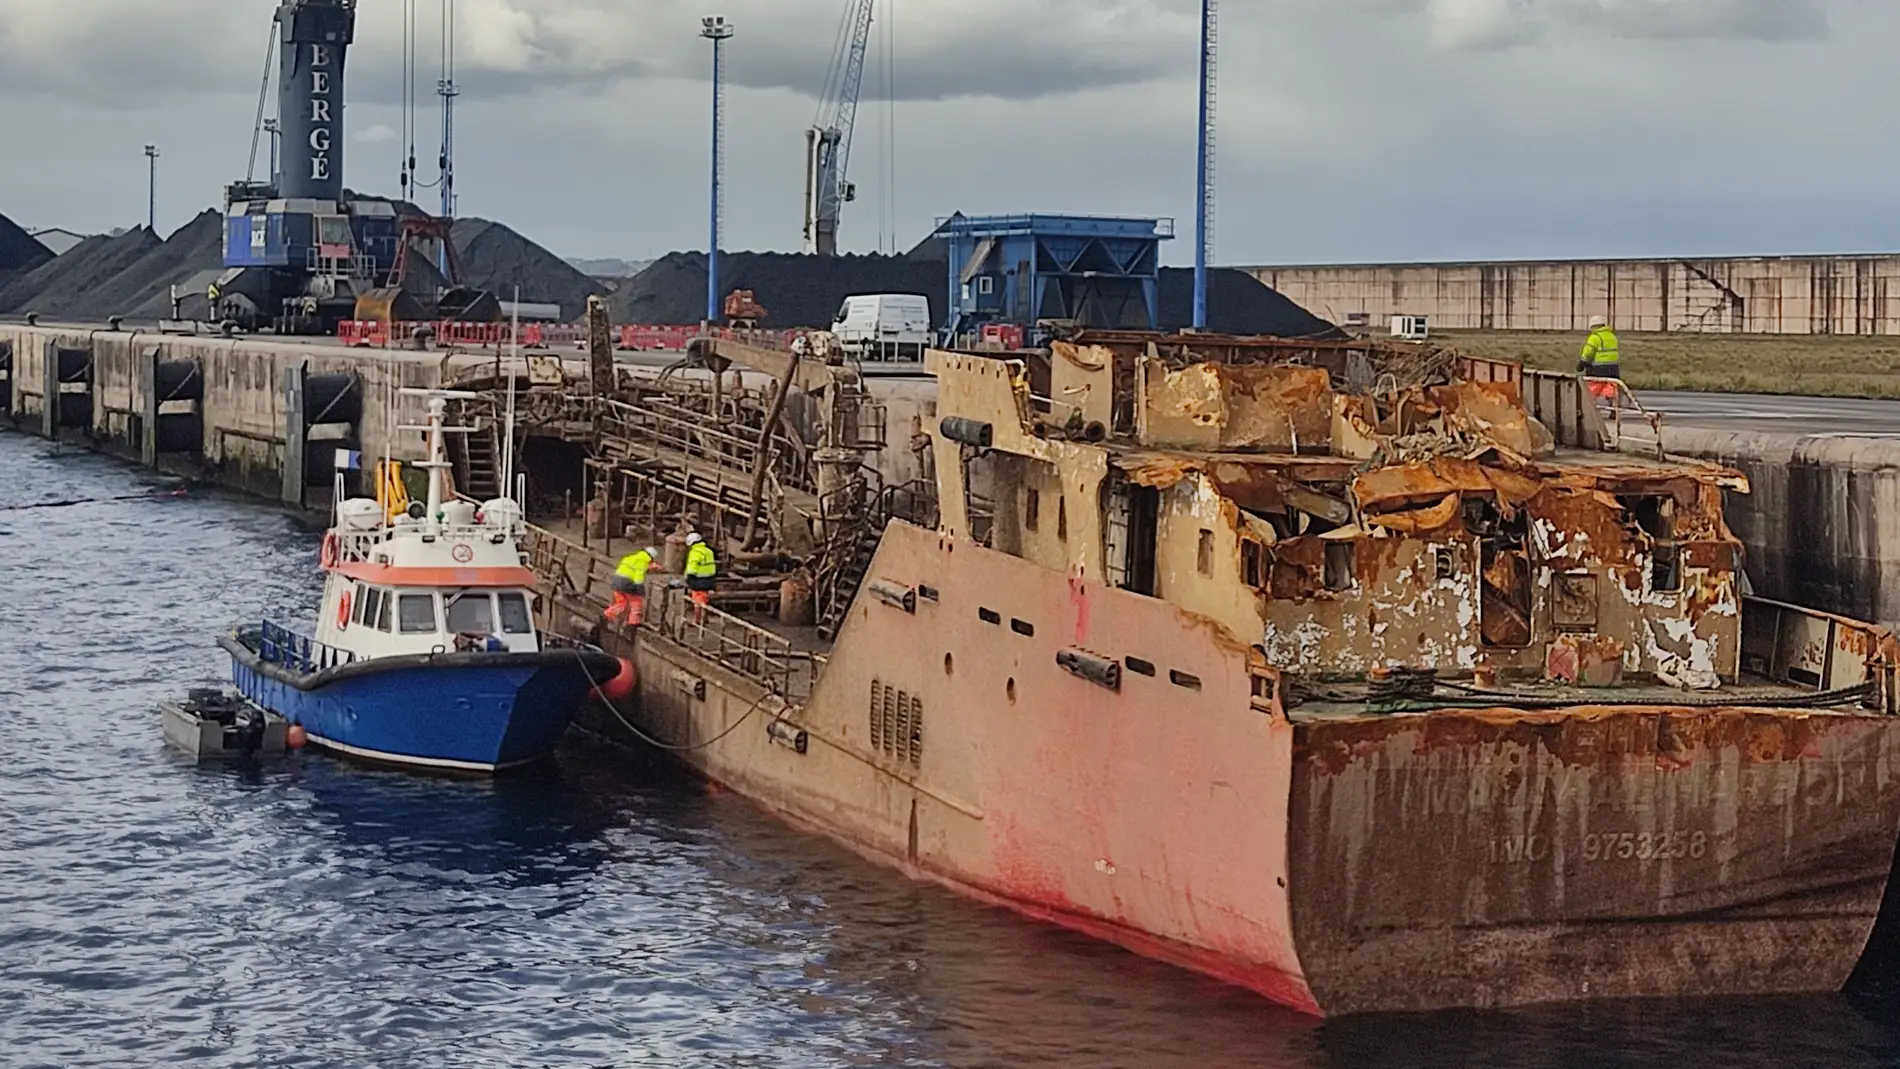 Narco-buque 'Nahir' en El Musel